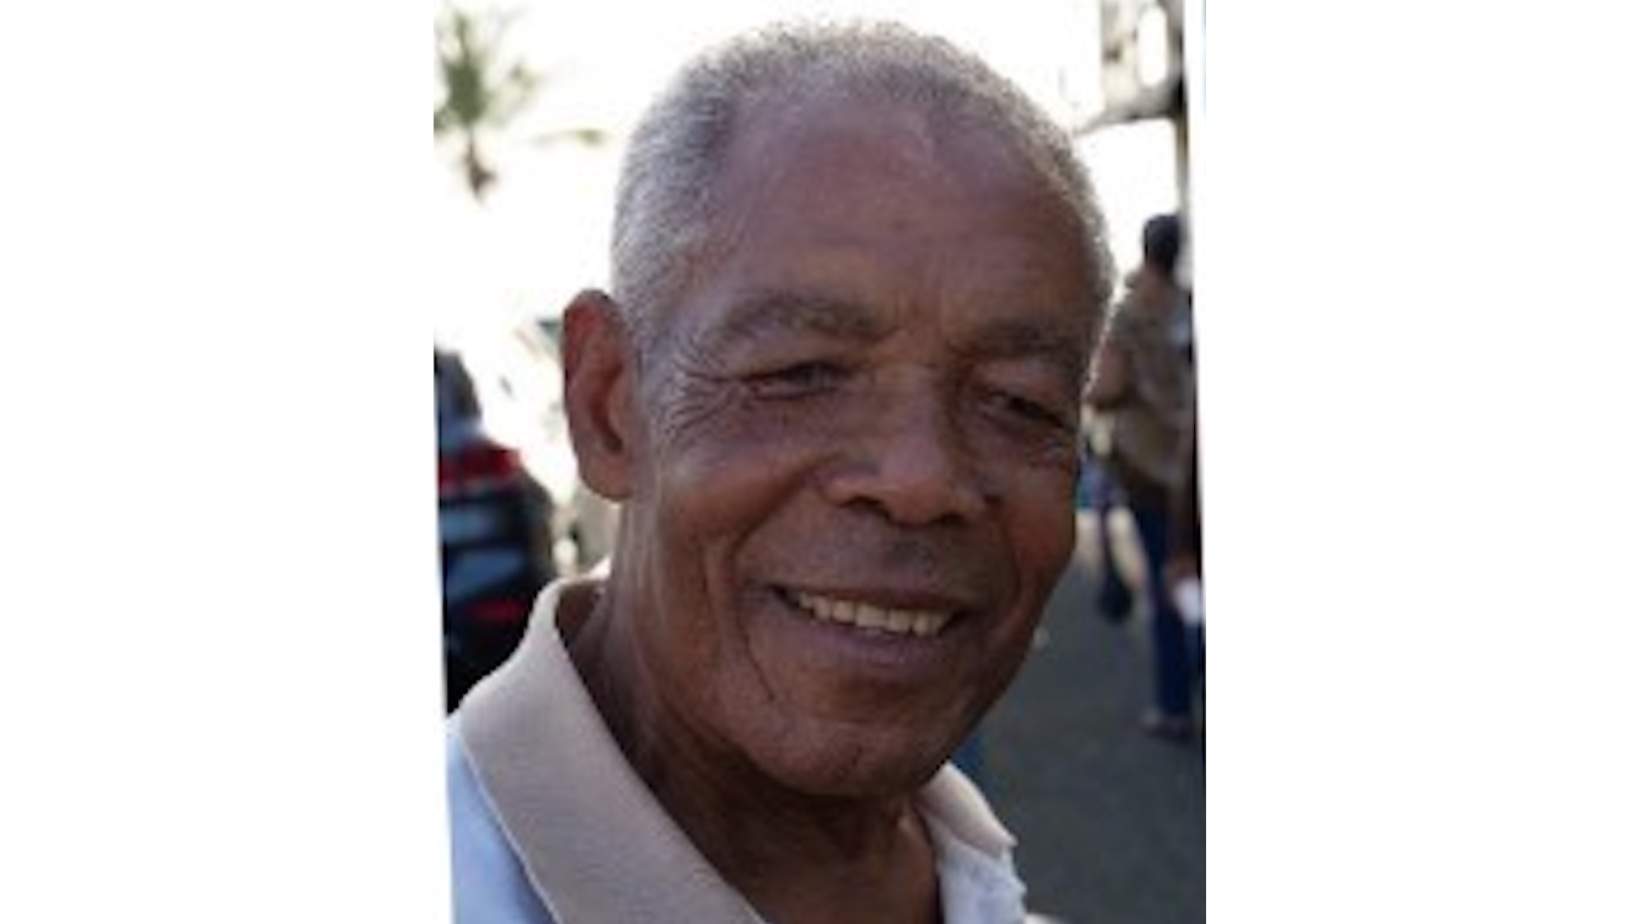     Un Port-Louisien de 84 ans porté disparu depuis 9 jours

